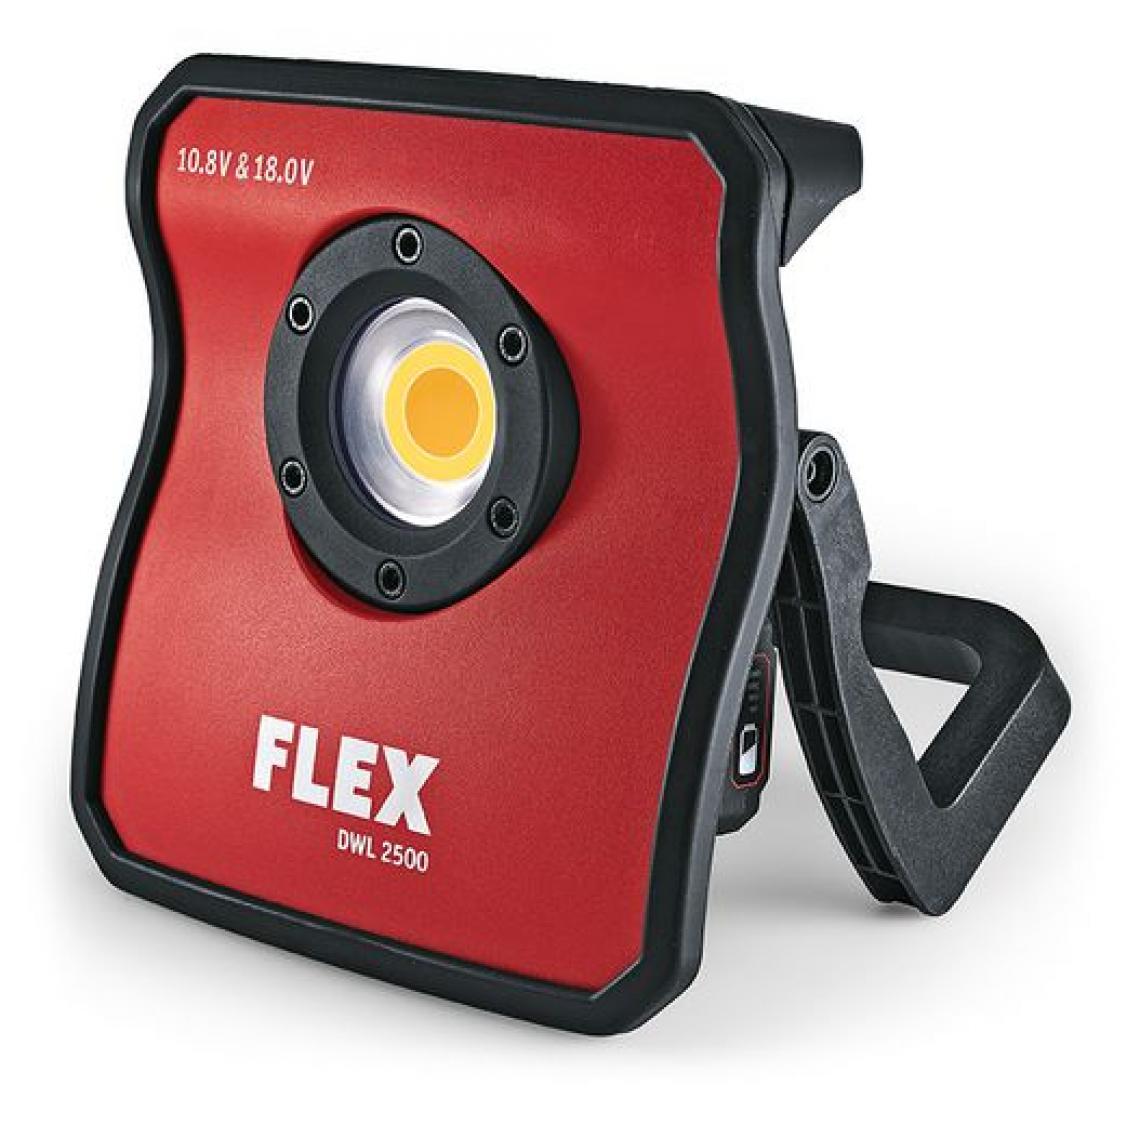 Flex - Lampe LED à spectre complet 10.8/18V DWL 2500 10.8/18.0 FLEX - sans batterie ni chargeur - 486728 - Lampes portatives sans fil